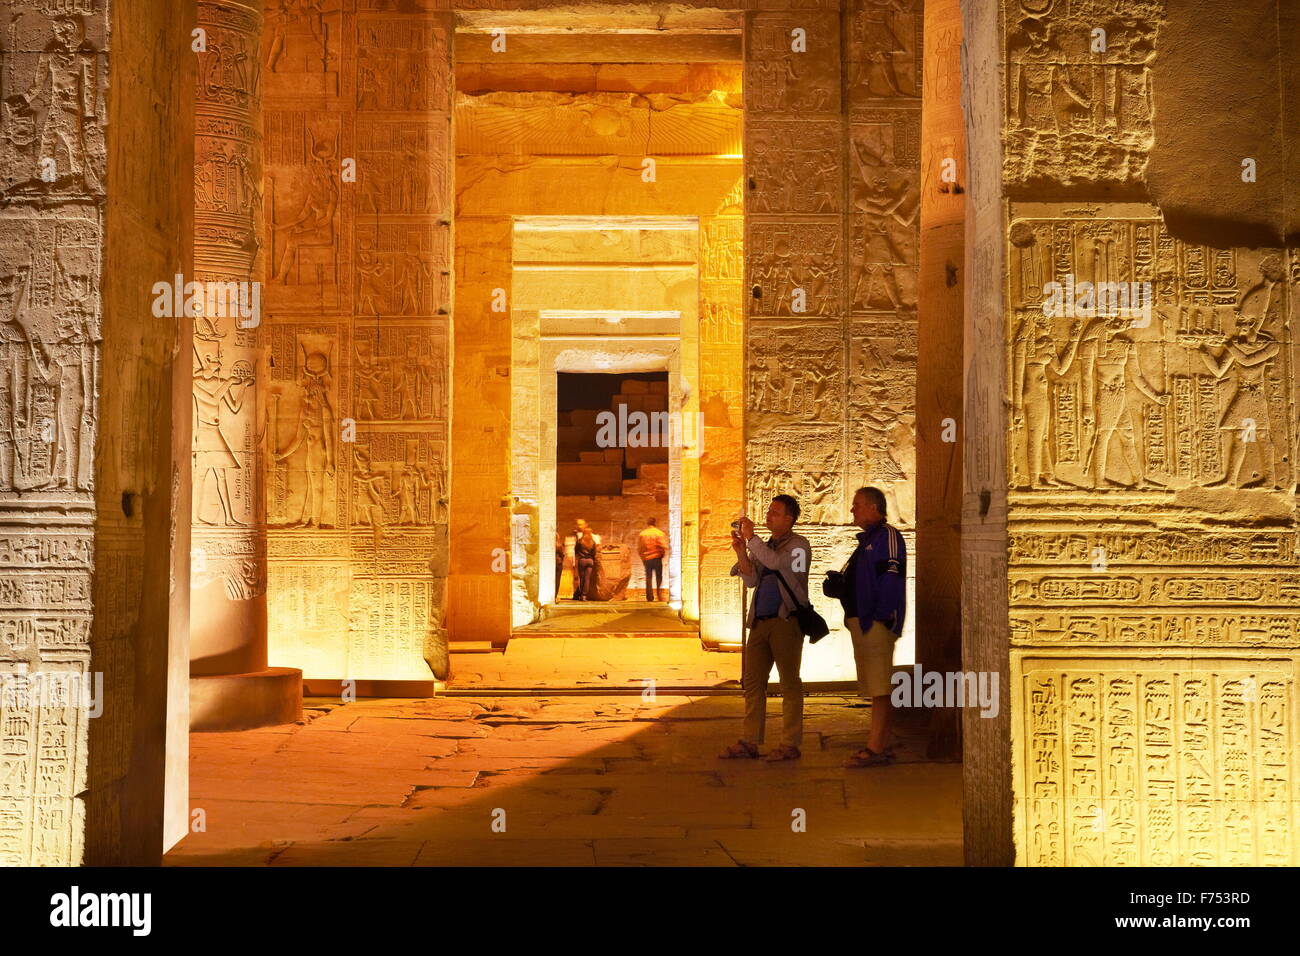 Egypt - Kom Ombo, Temple of Sobek Stock Photo